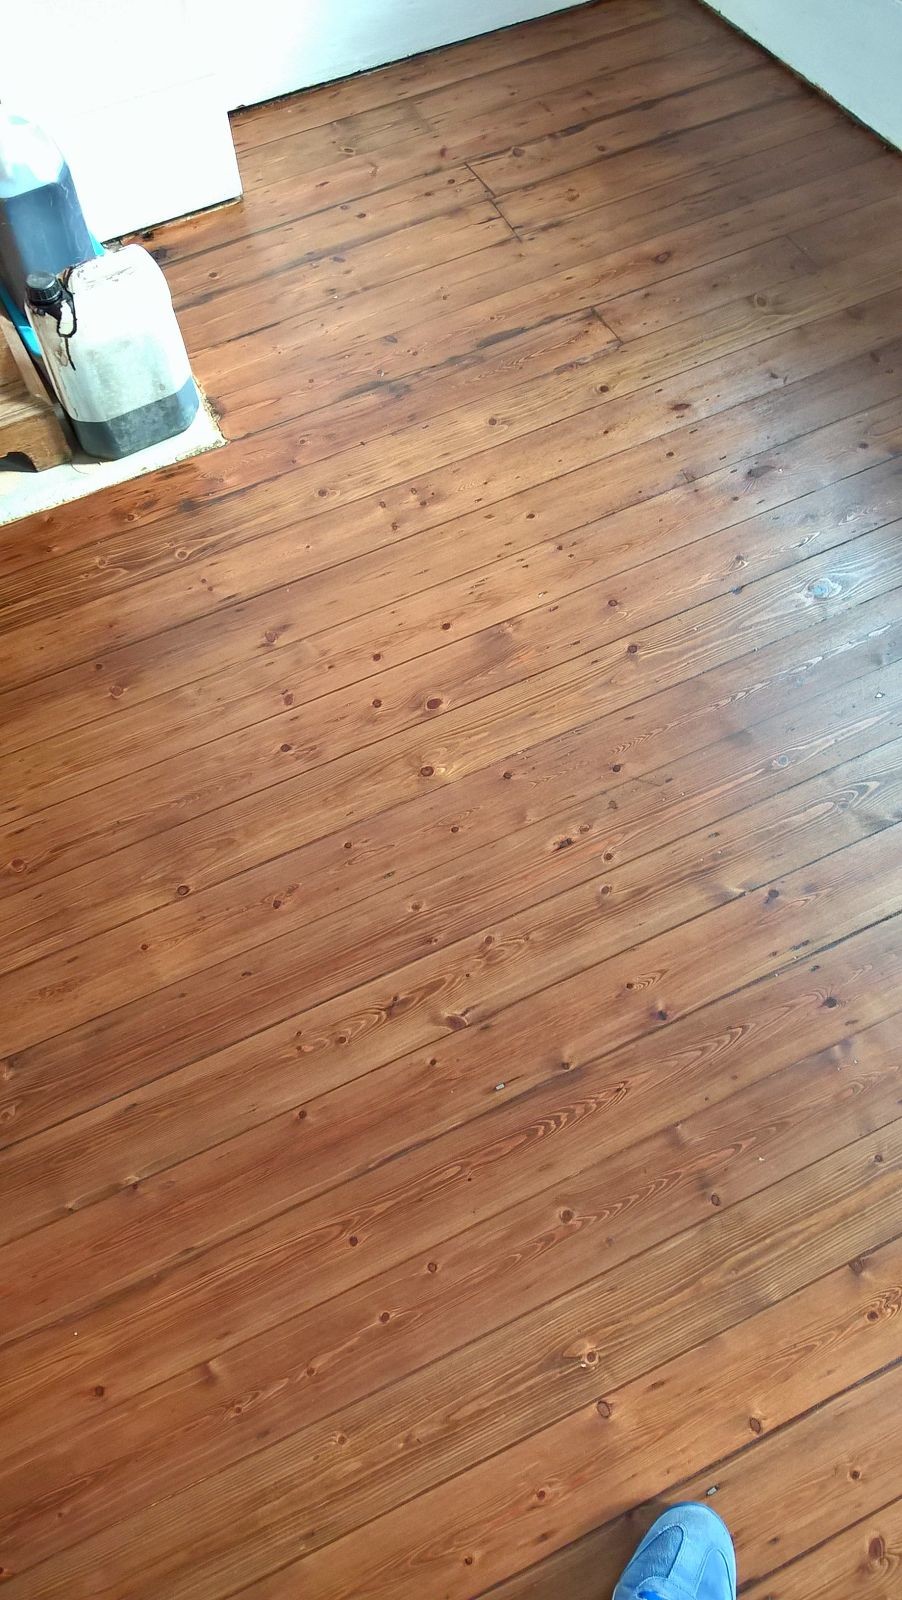 Mid oak stain applied to floor boards